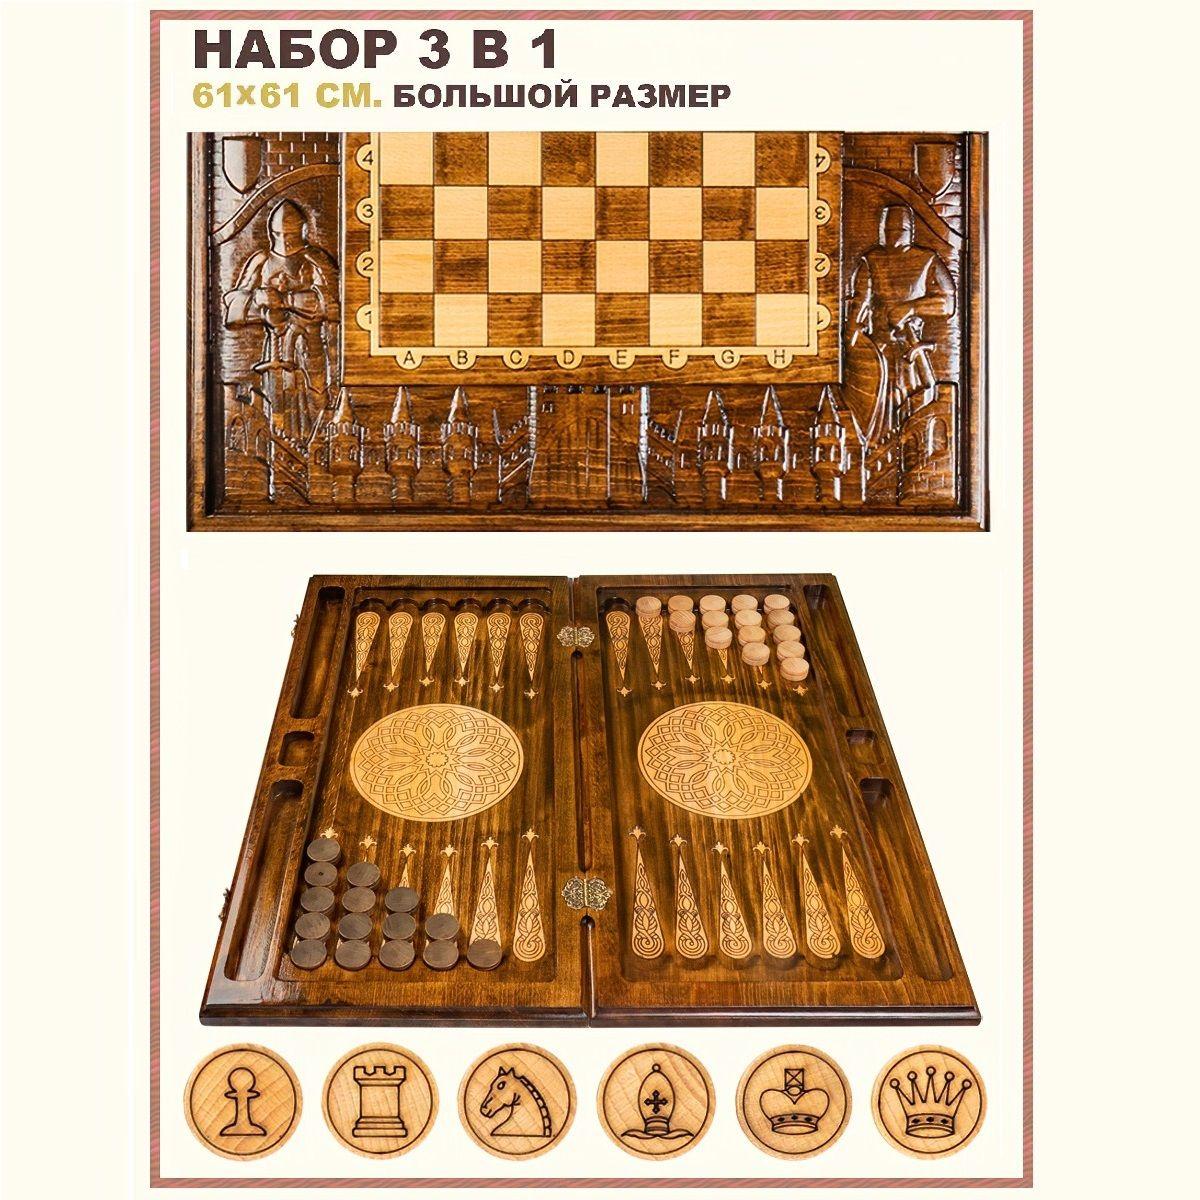 игРай | Шахматы 3 в 1 большие деревянные, подарочный набор настольных игр Рыцари, 61х61 см., нарды шашки армянские, подарок мужчине, игРай